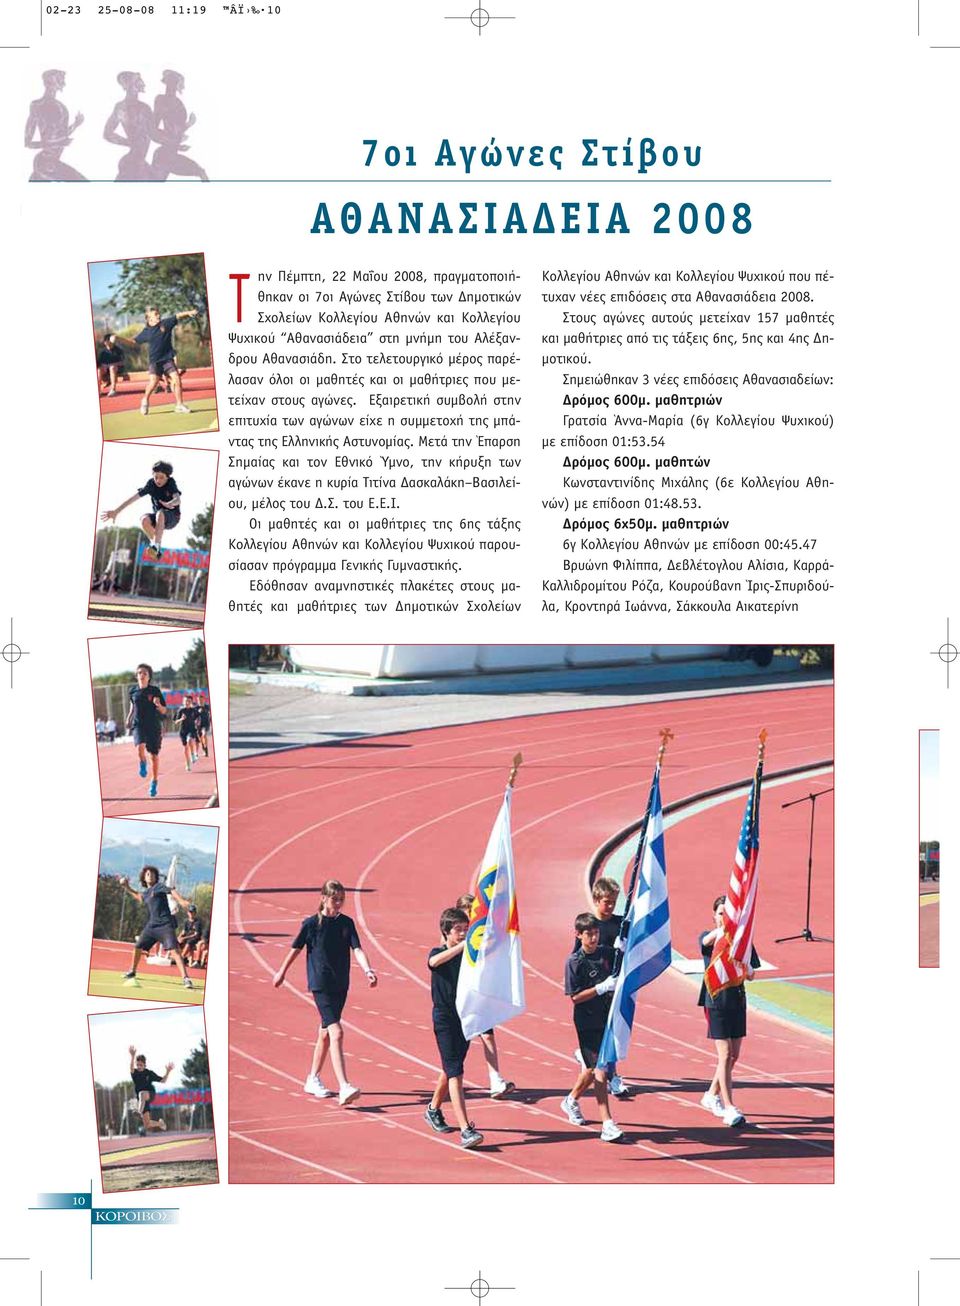 Εξαιρετική συμβολή στην επιτυχία των αγώνων είχε η συμμετοχή της μπάντας της Ελληνικής Αστυνομίας.